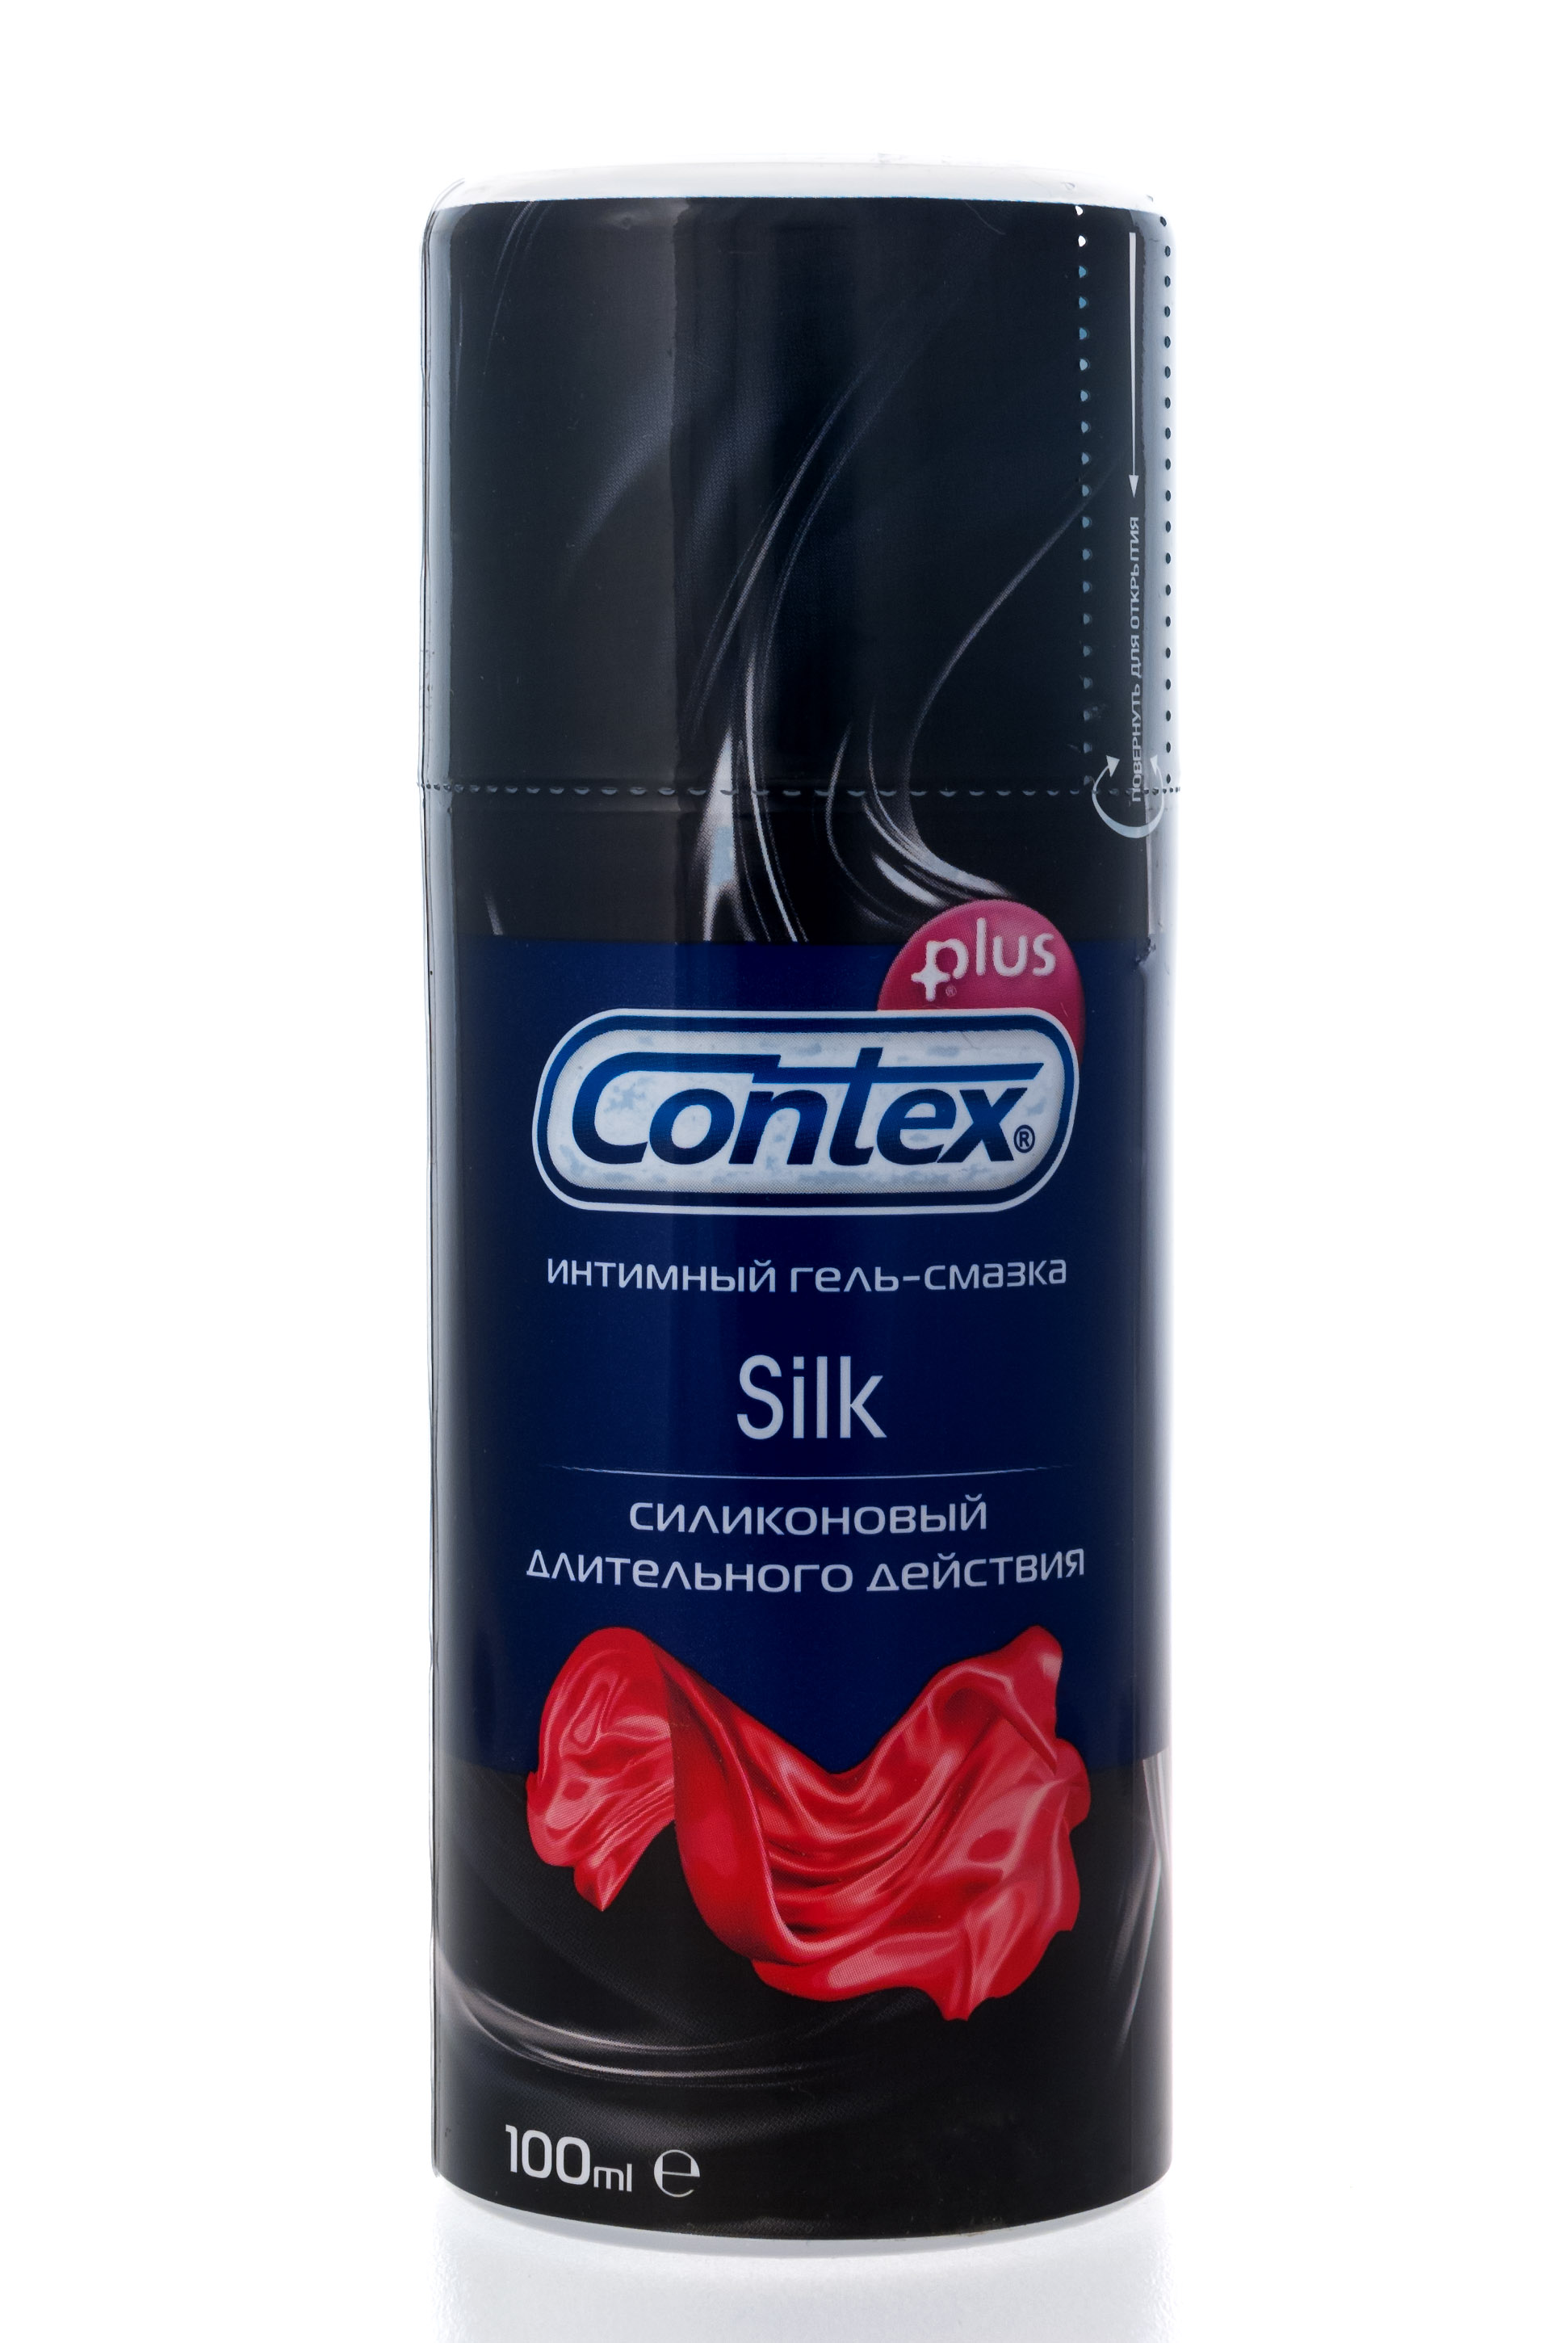 Contex Интимный гель-смазка Silk, 100мл (Contex, Гель-смазка